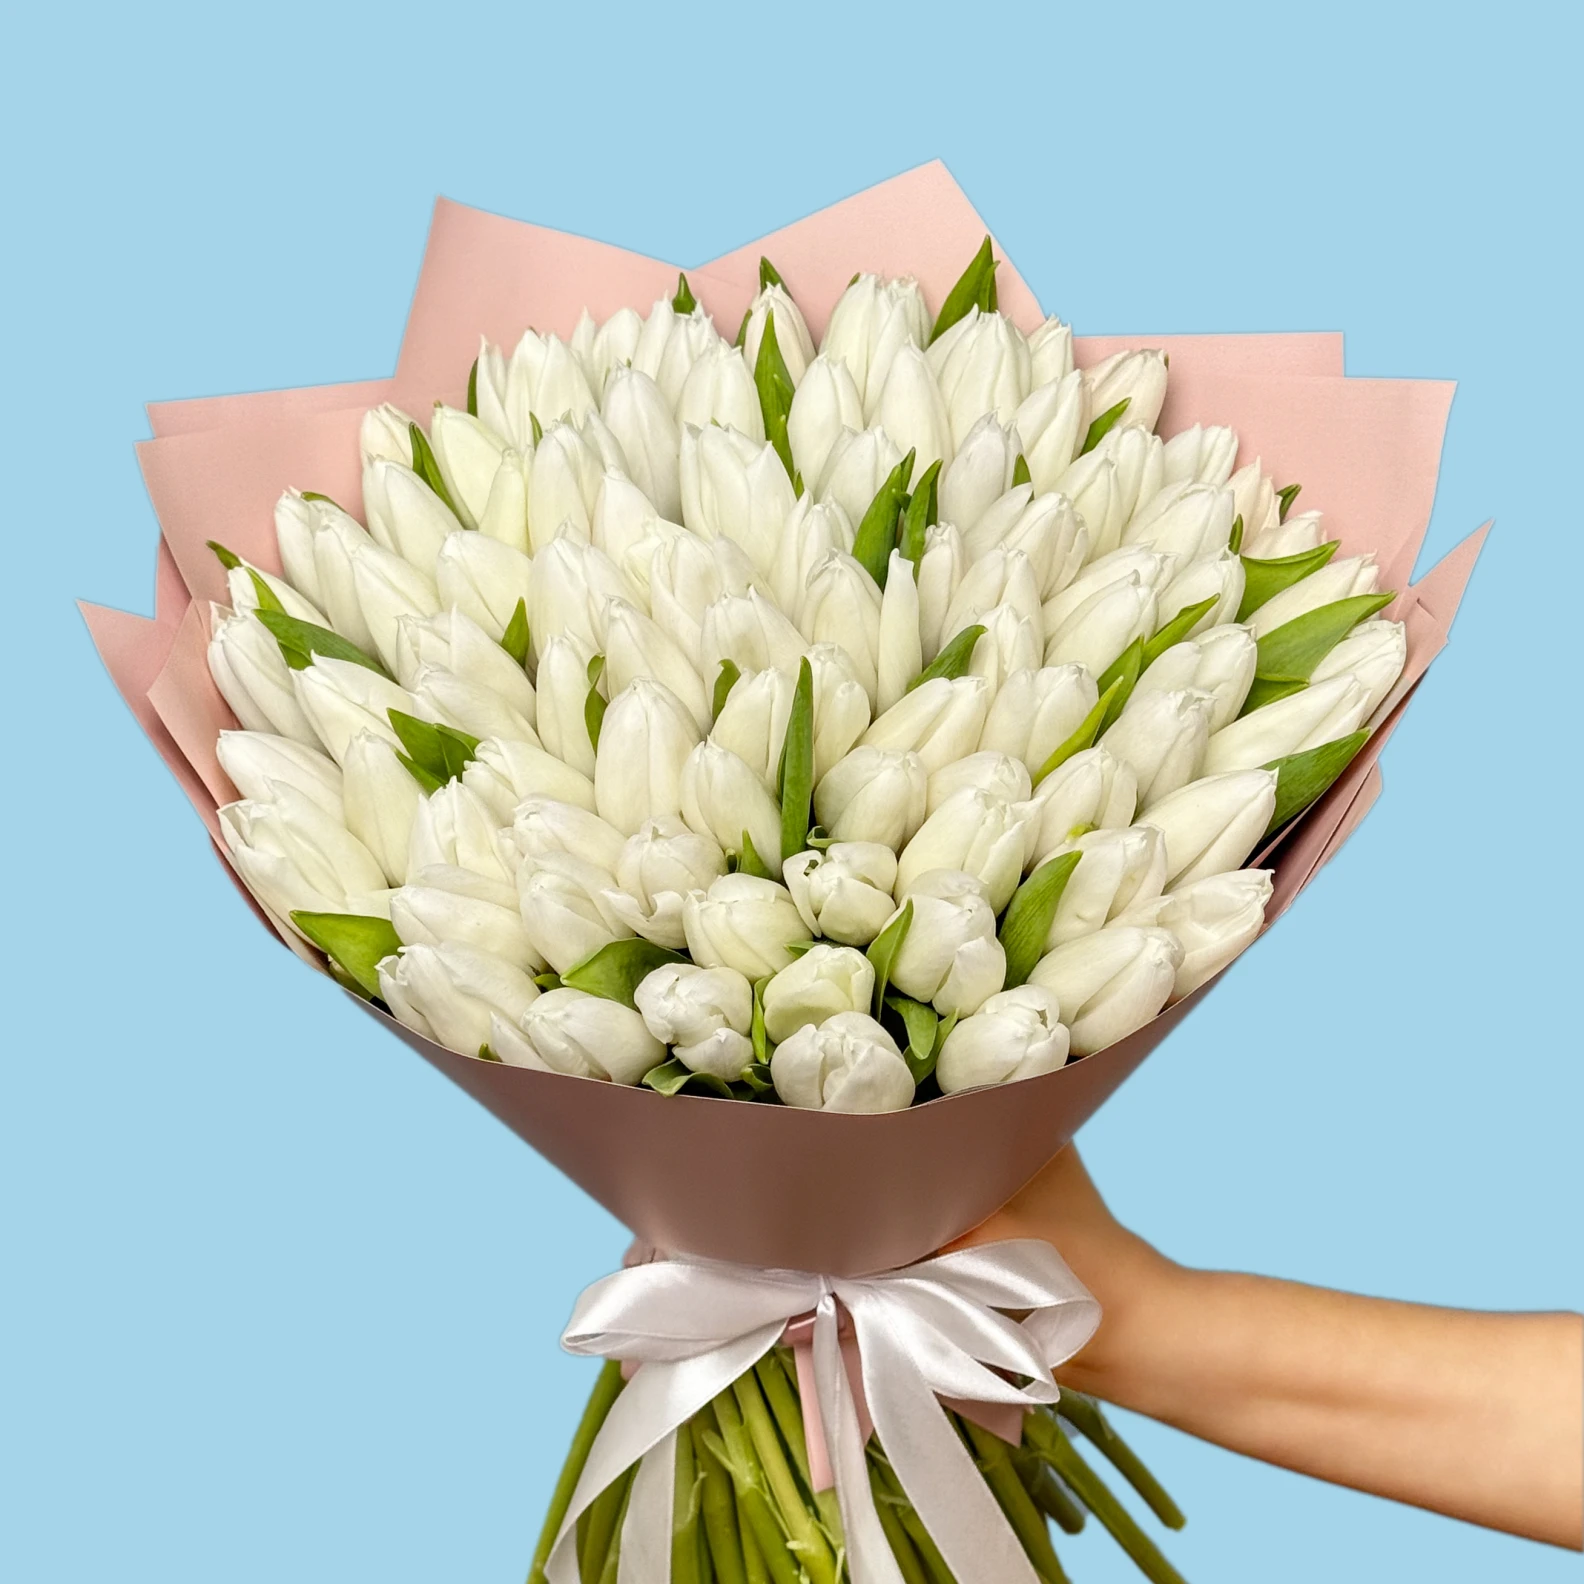 100 White Tulips - image №2